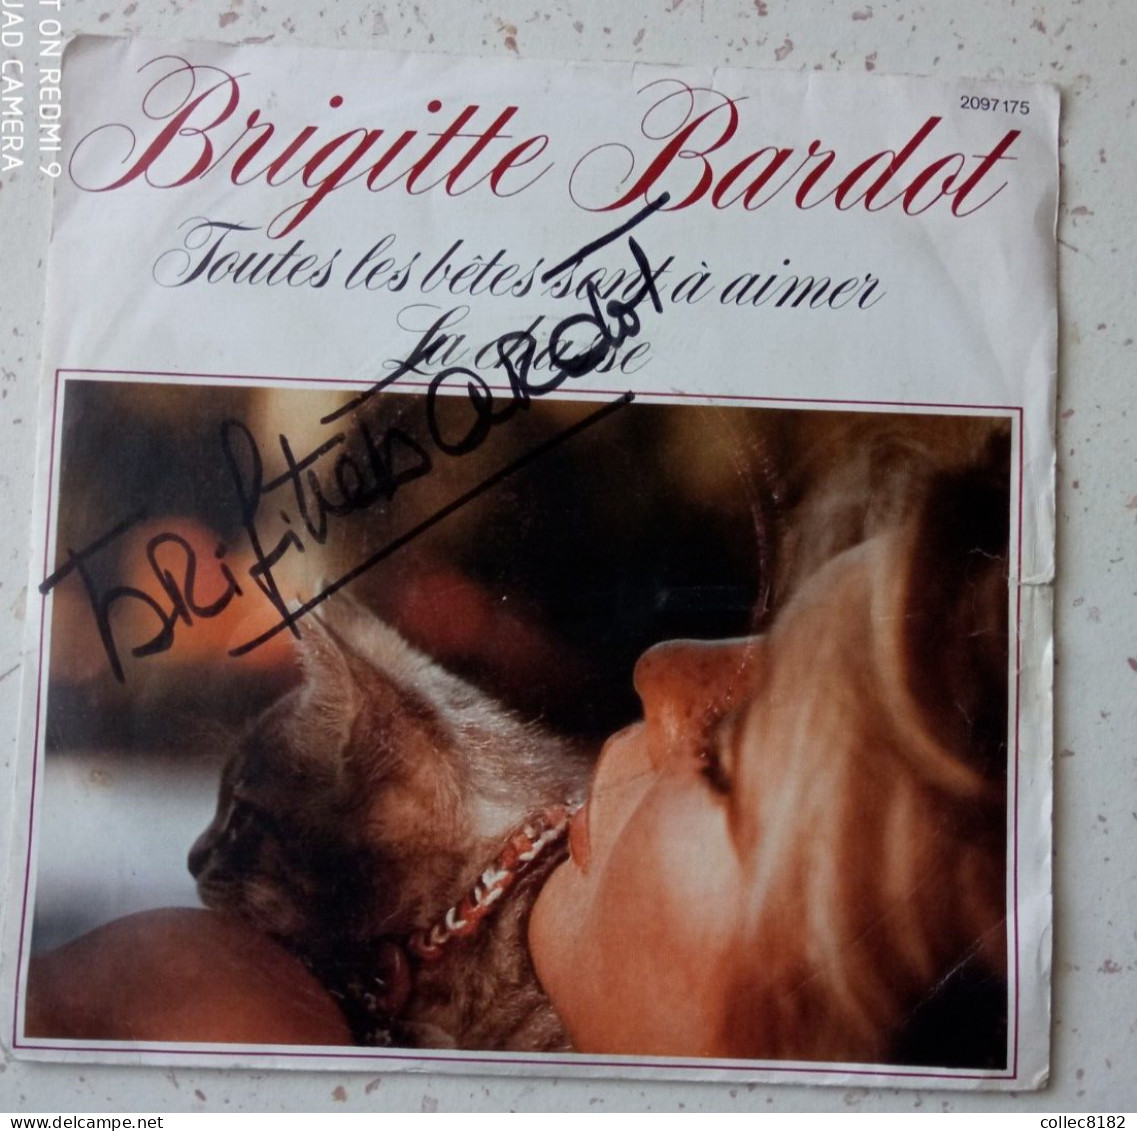 Autographe Original De Brigitte Bardot Sur 45 Tr Toutes Les Bêtes Sont à Aimer Port Offert France - Autres - Musique Française